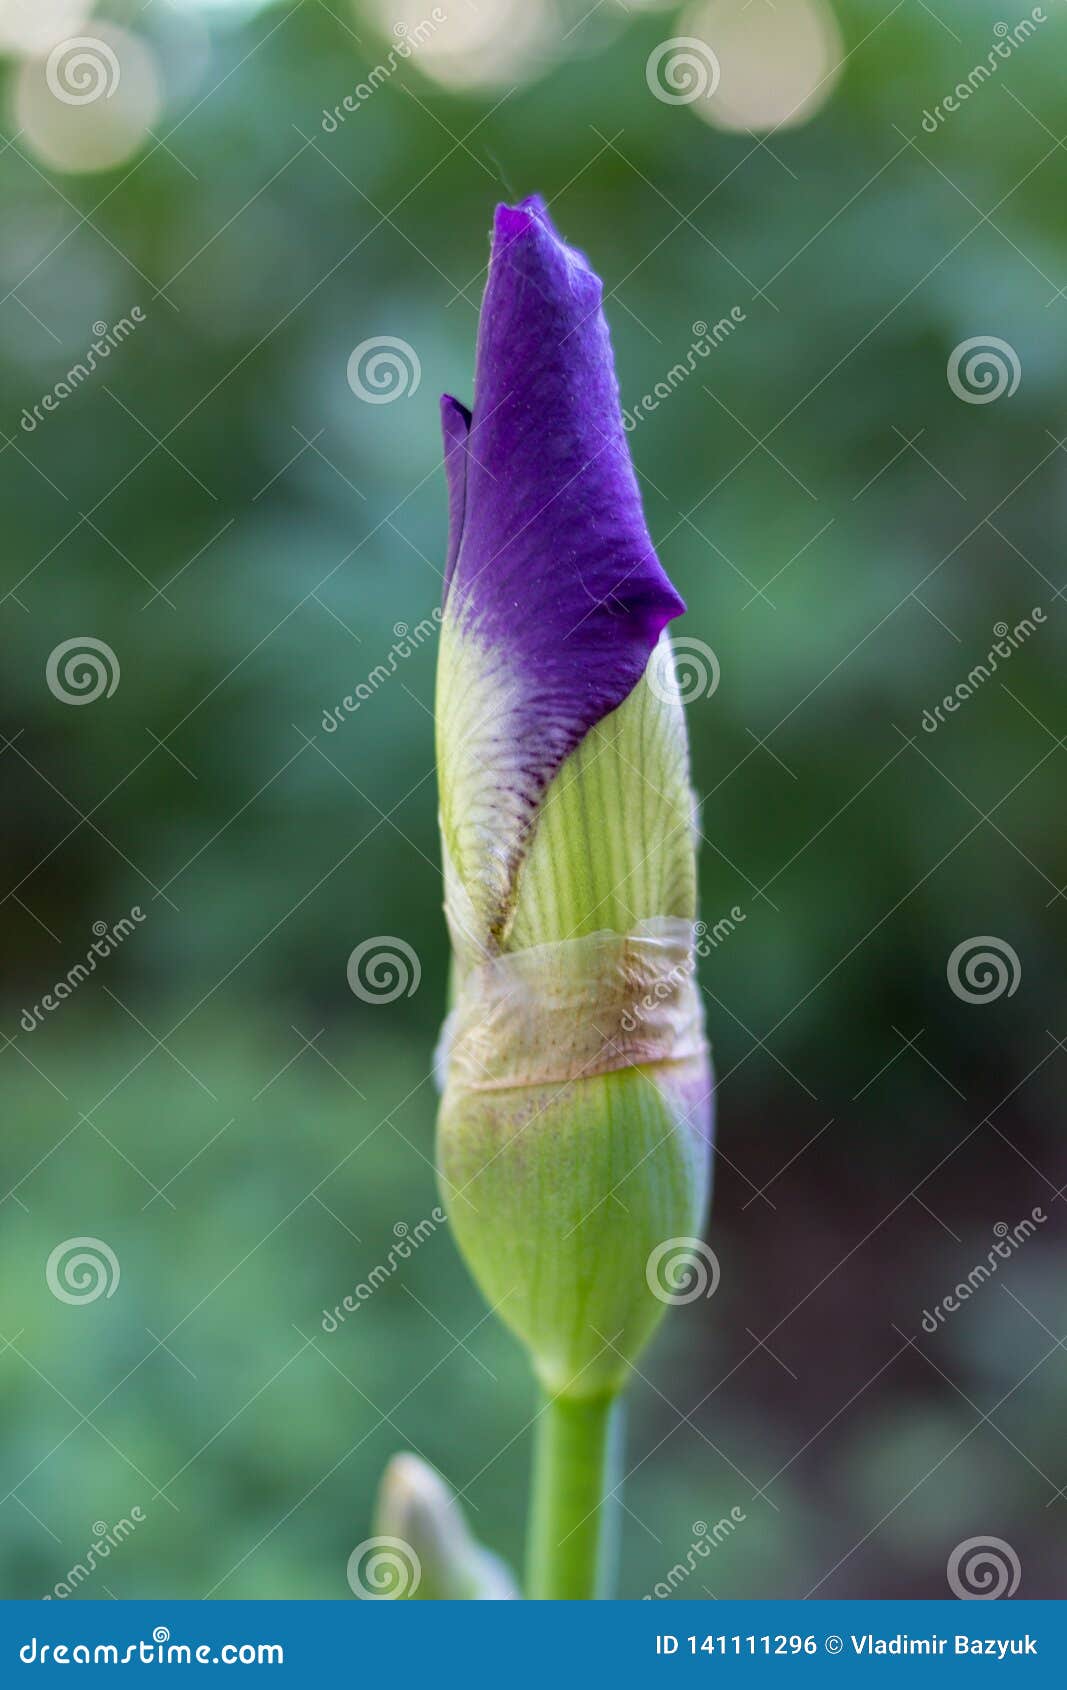 Ovary Flower Iris,kidney Flower Iris Dissolves Flower Stock Photo ...